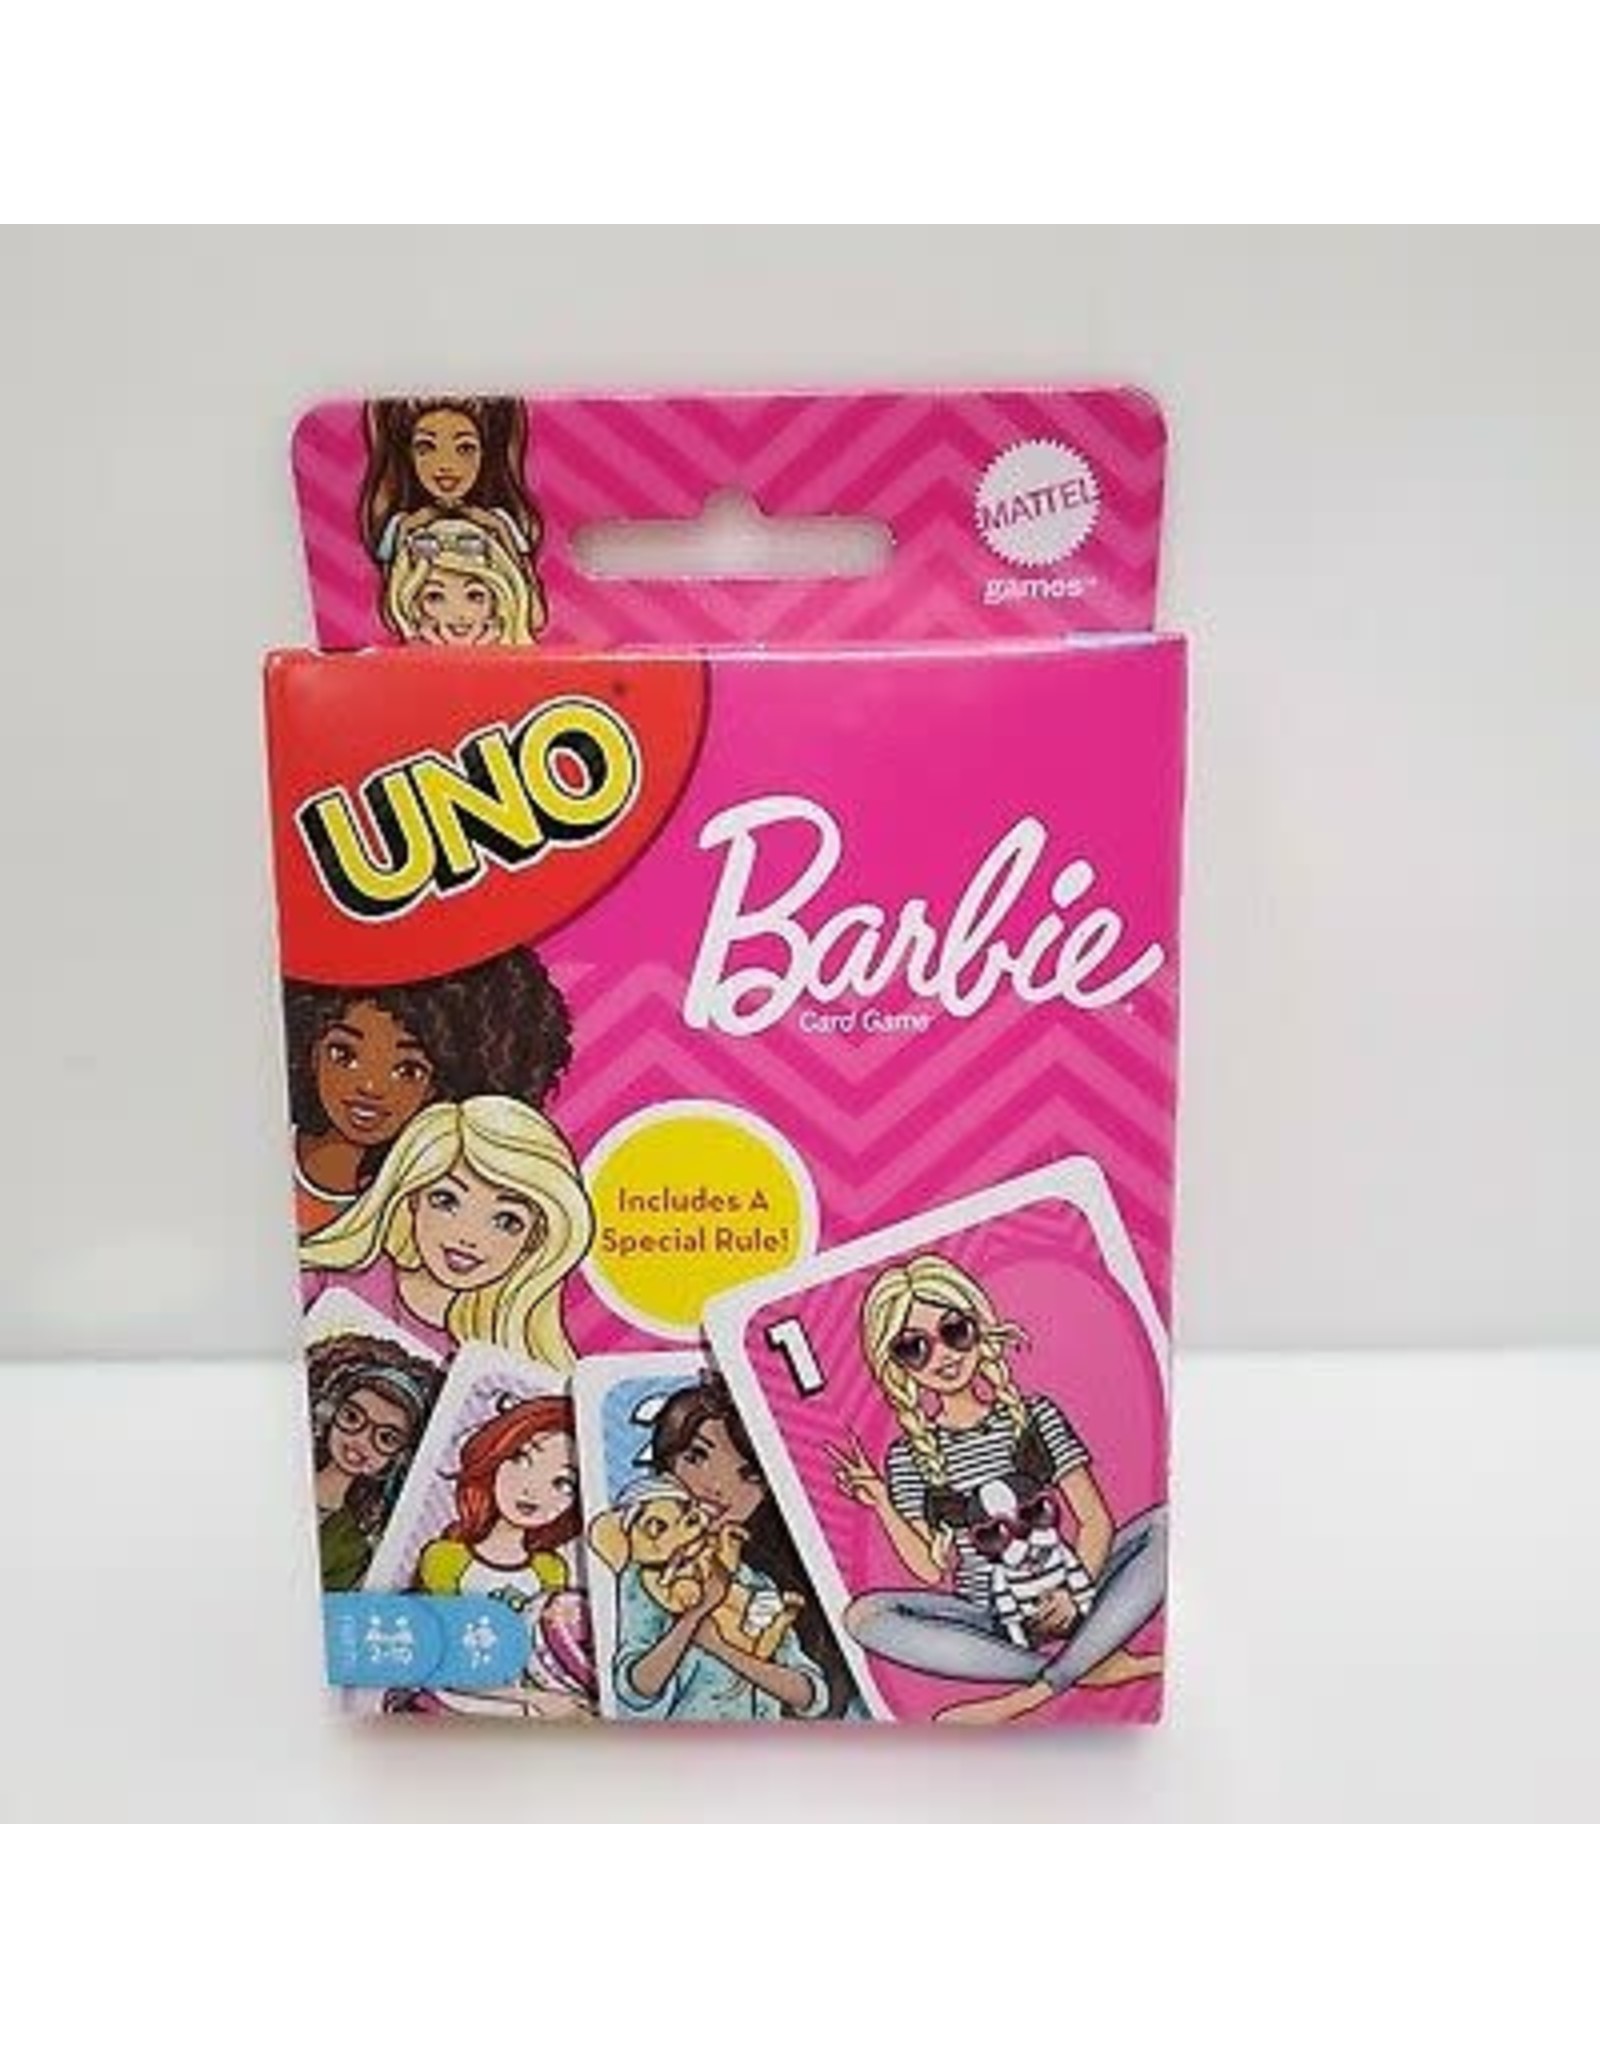 Mattel Barbie Uno